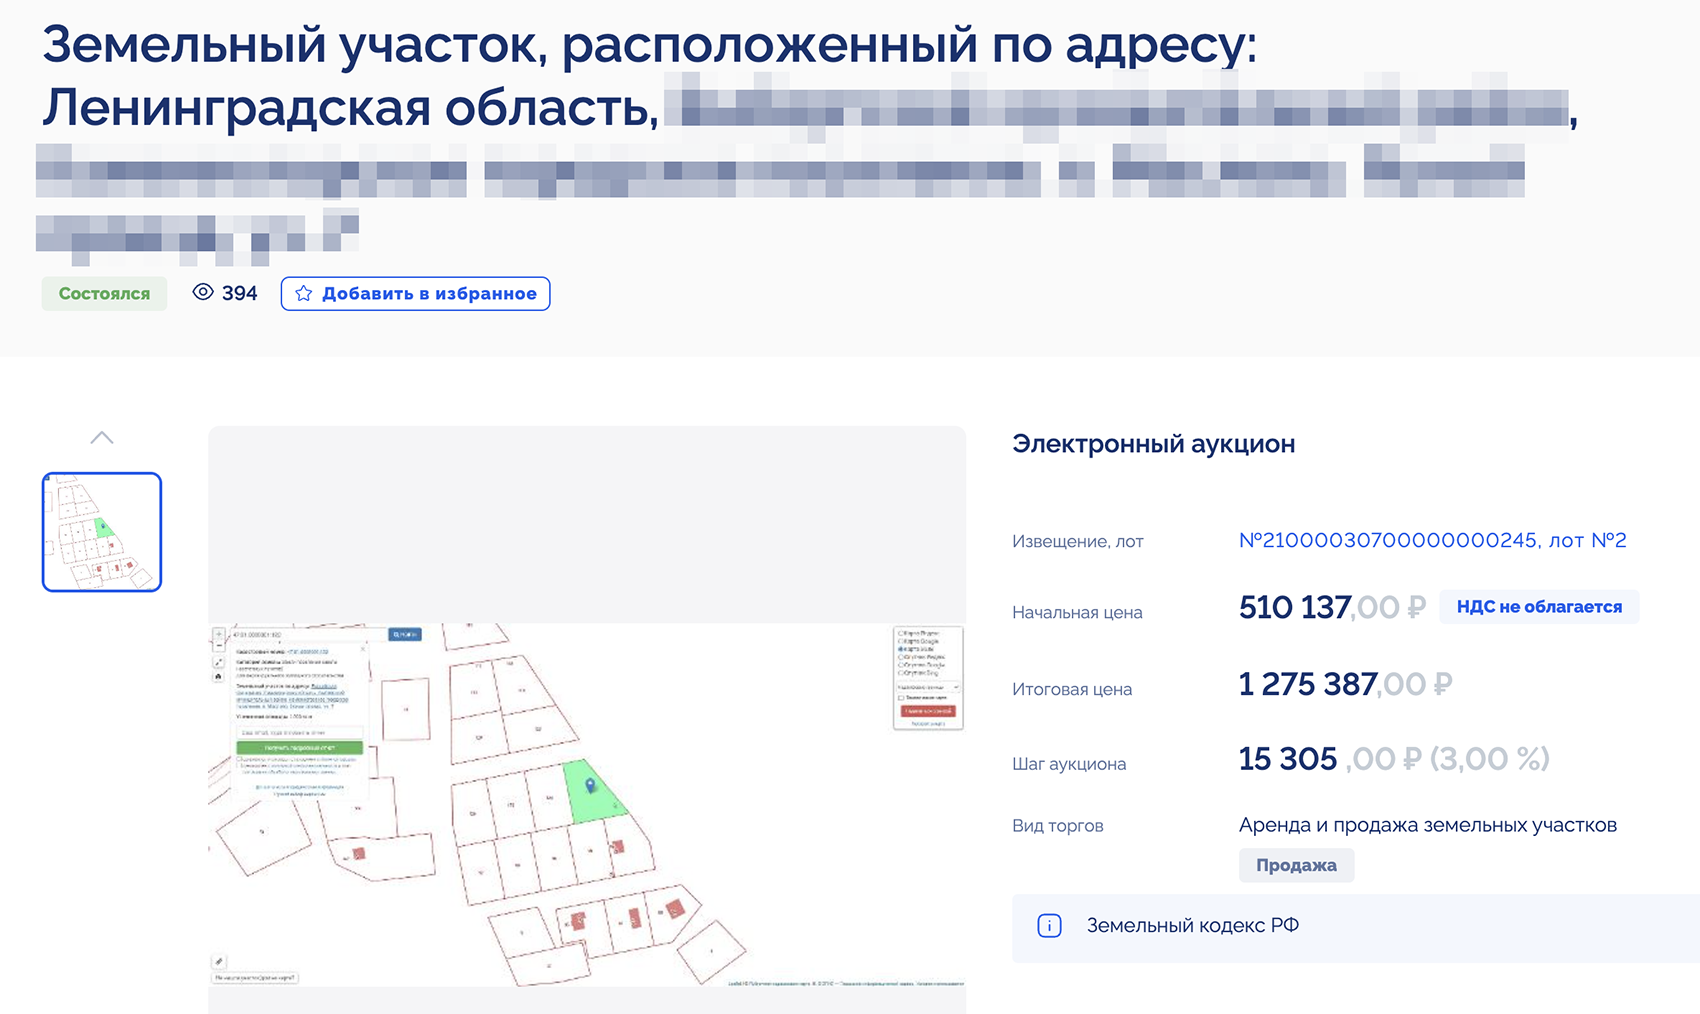 На этом аукционе цену на участок подняли более чем в два раза. Средняя рыночная стоимость такого участка — примерно 1 440 000 ₽, то есть в итоге после торгов цена приблизилась к рыночной. Источник: torgi.gov.ru